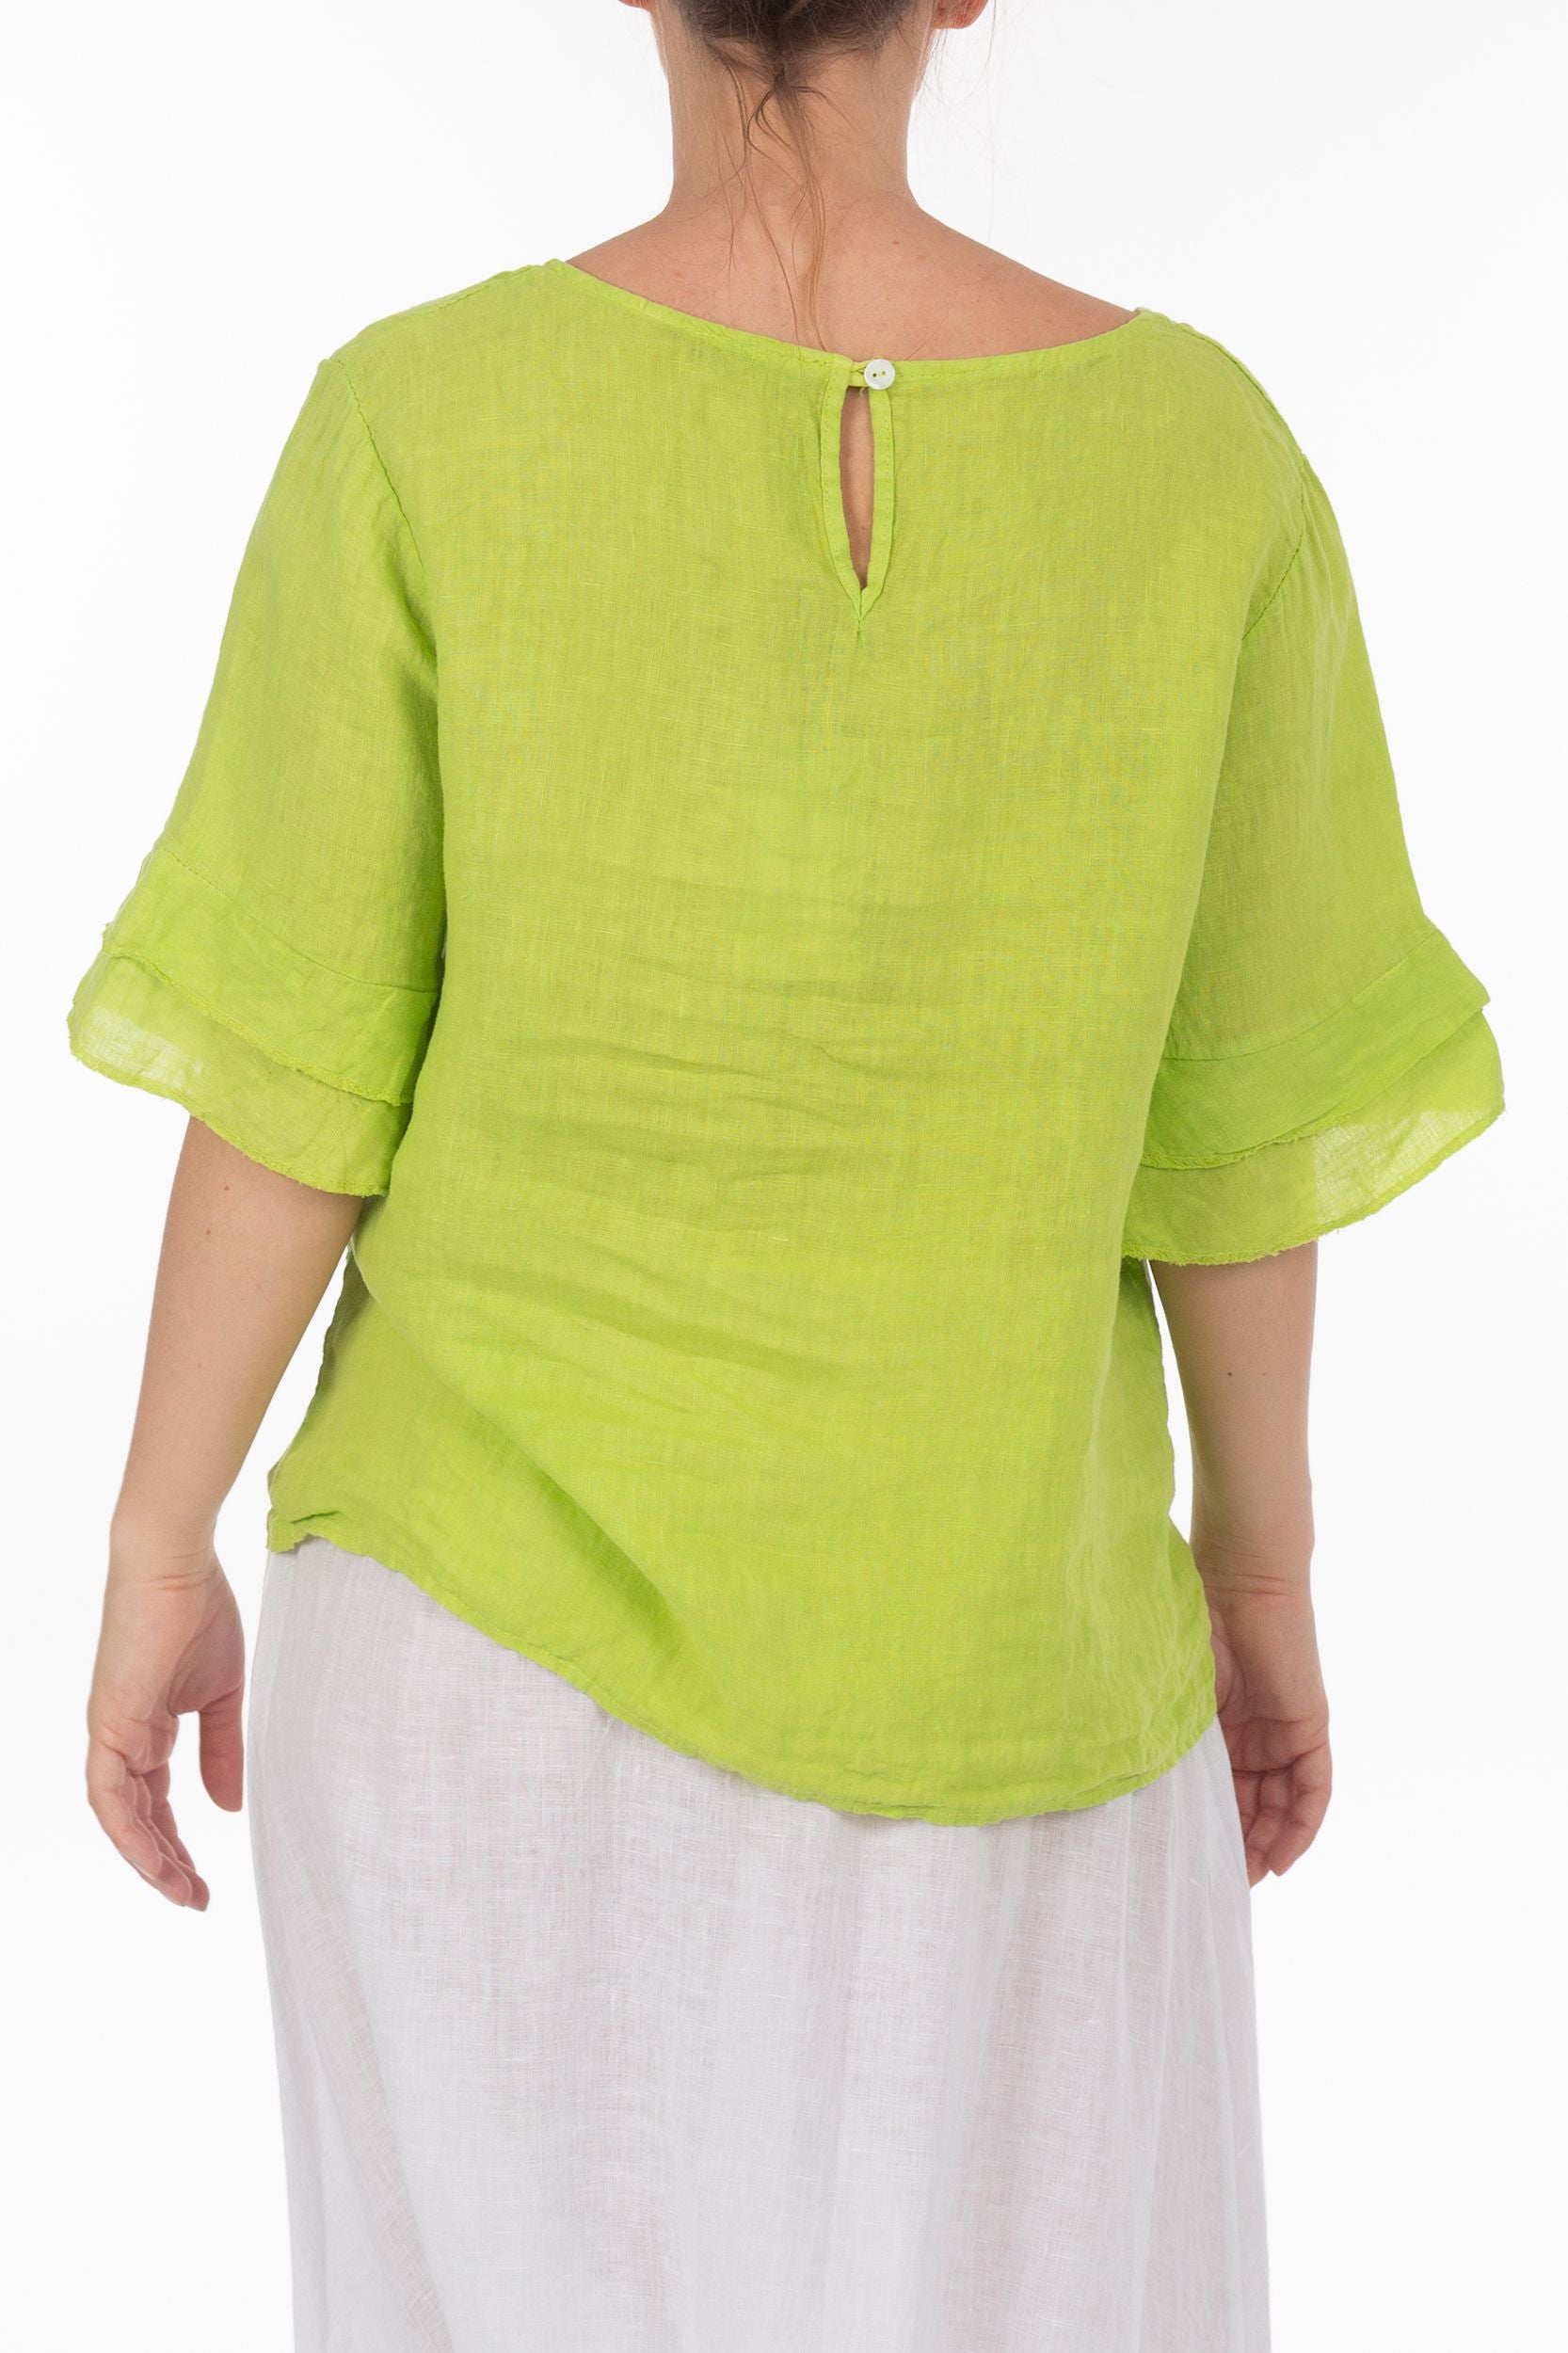 Linnen blouse short -sleeveved